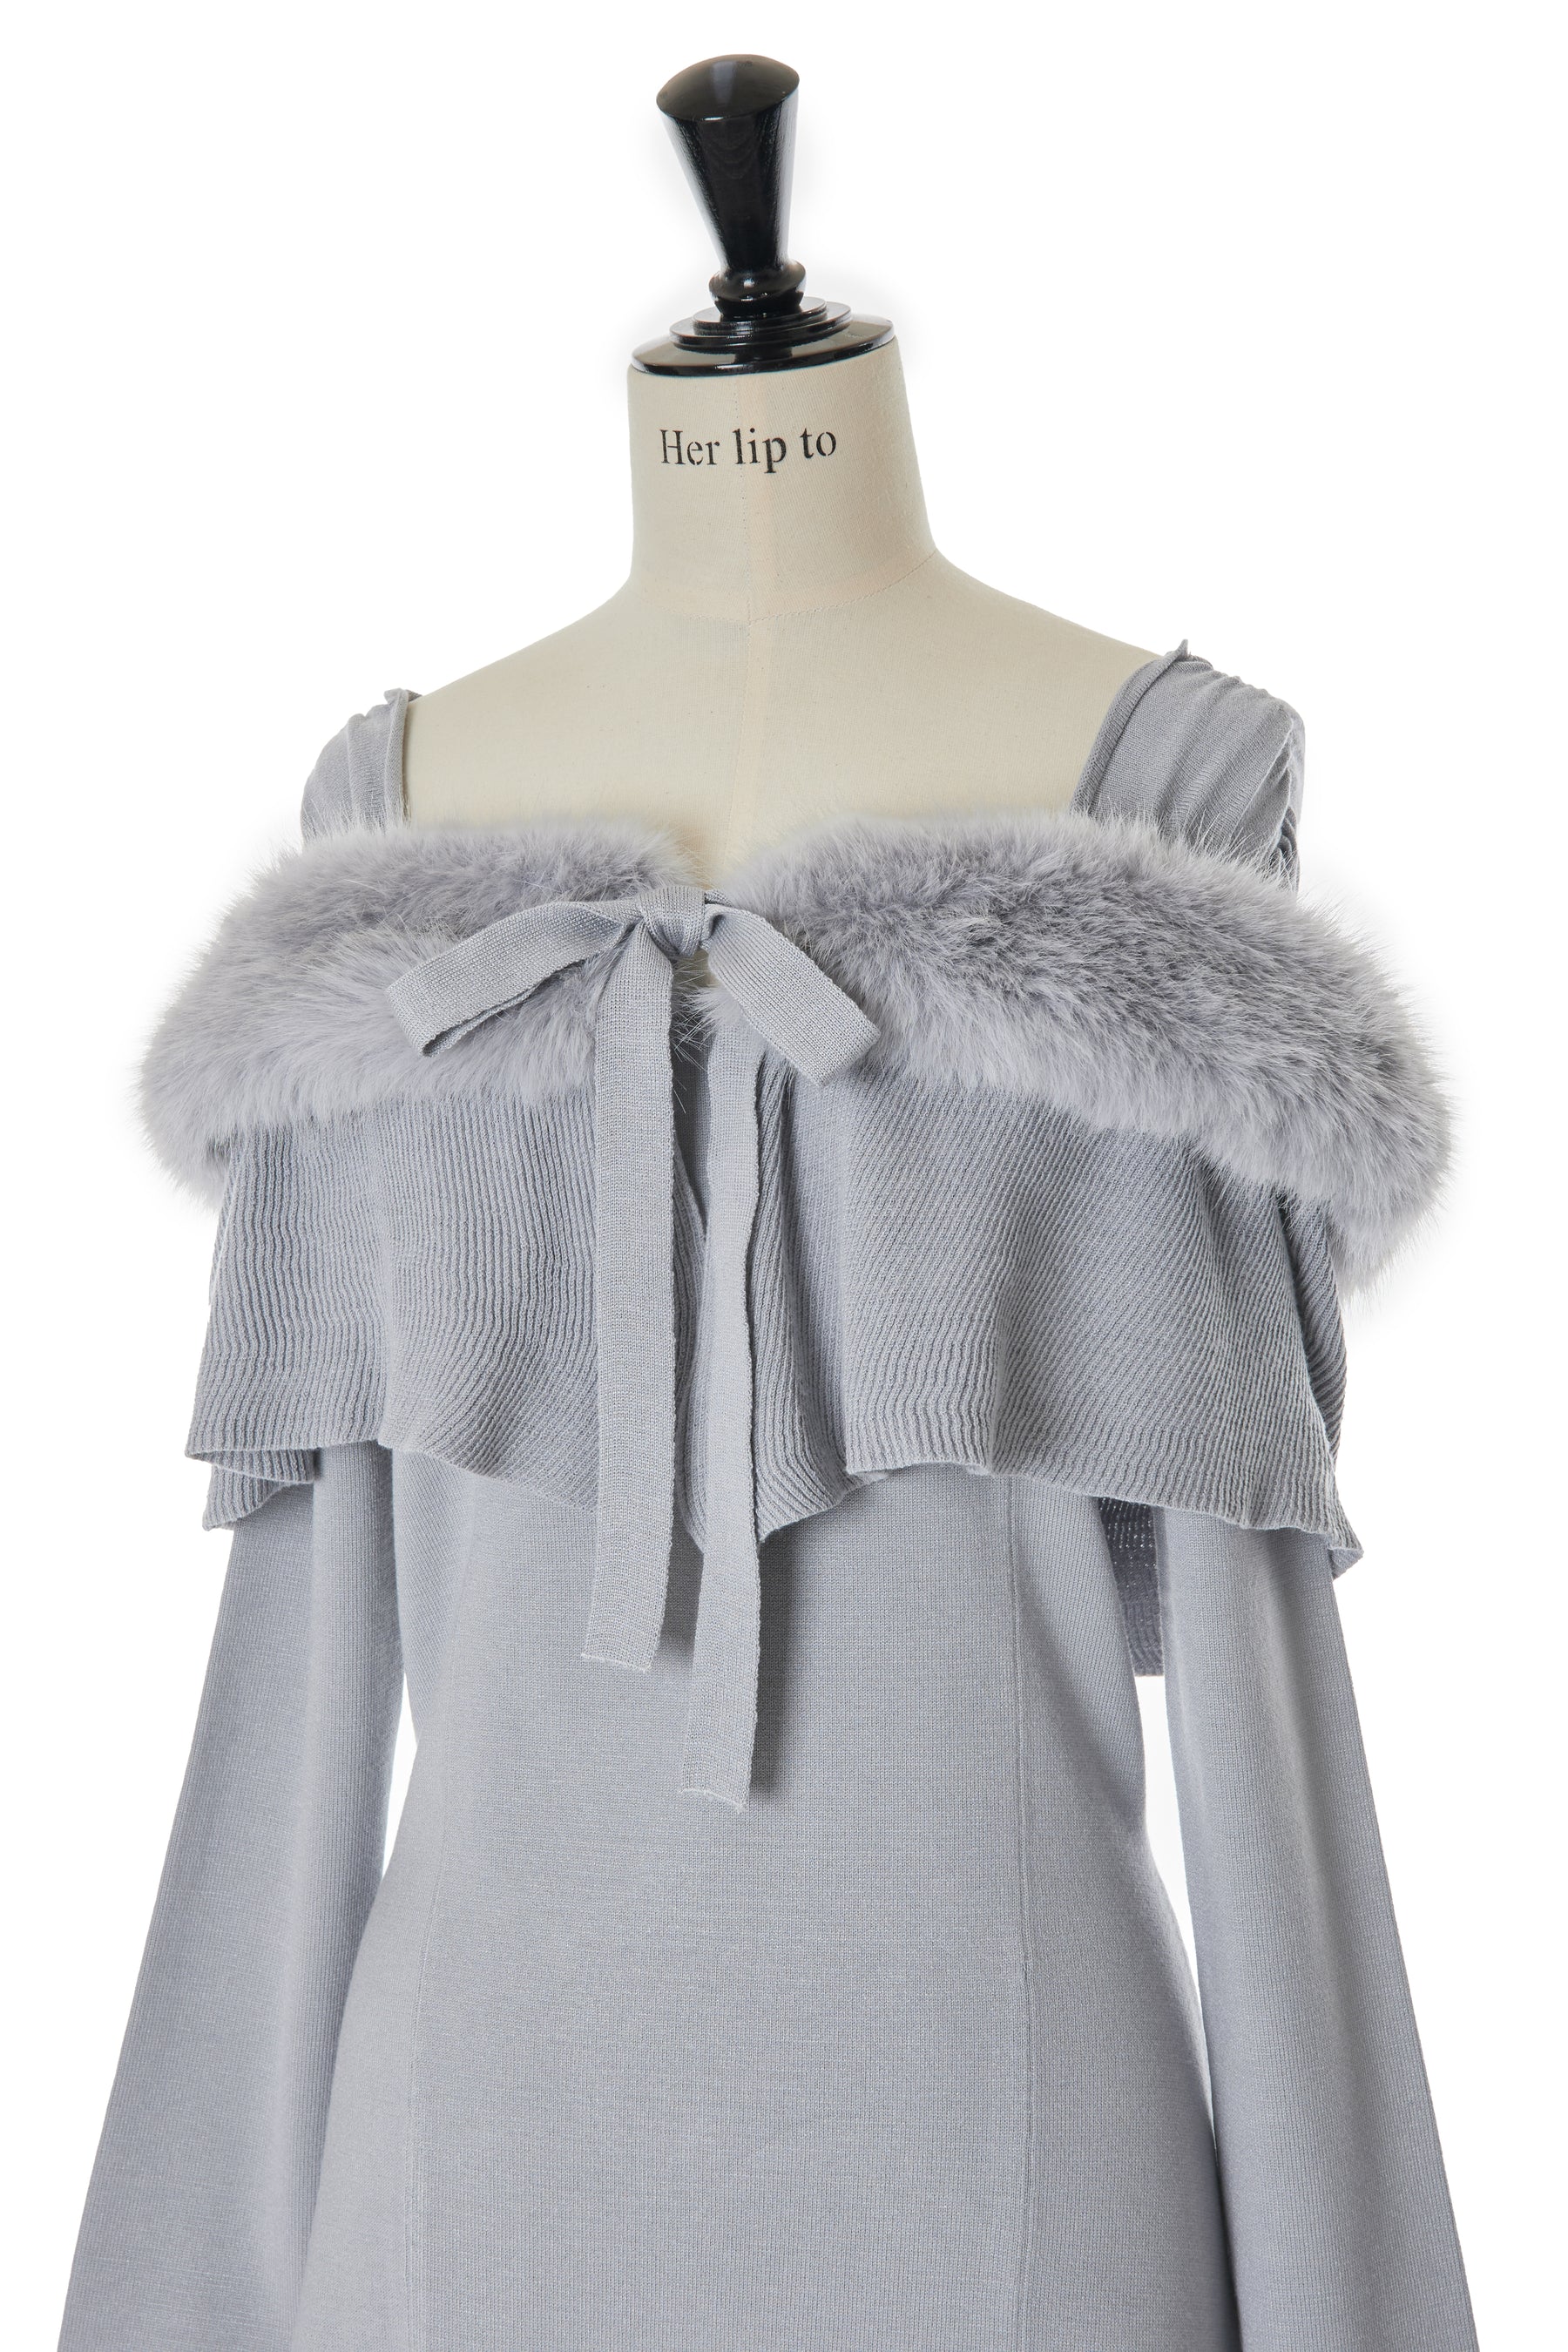 クーポンGET Herlipto Ritz Faux Fur Mini Dress - ワンピース